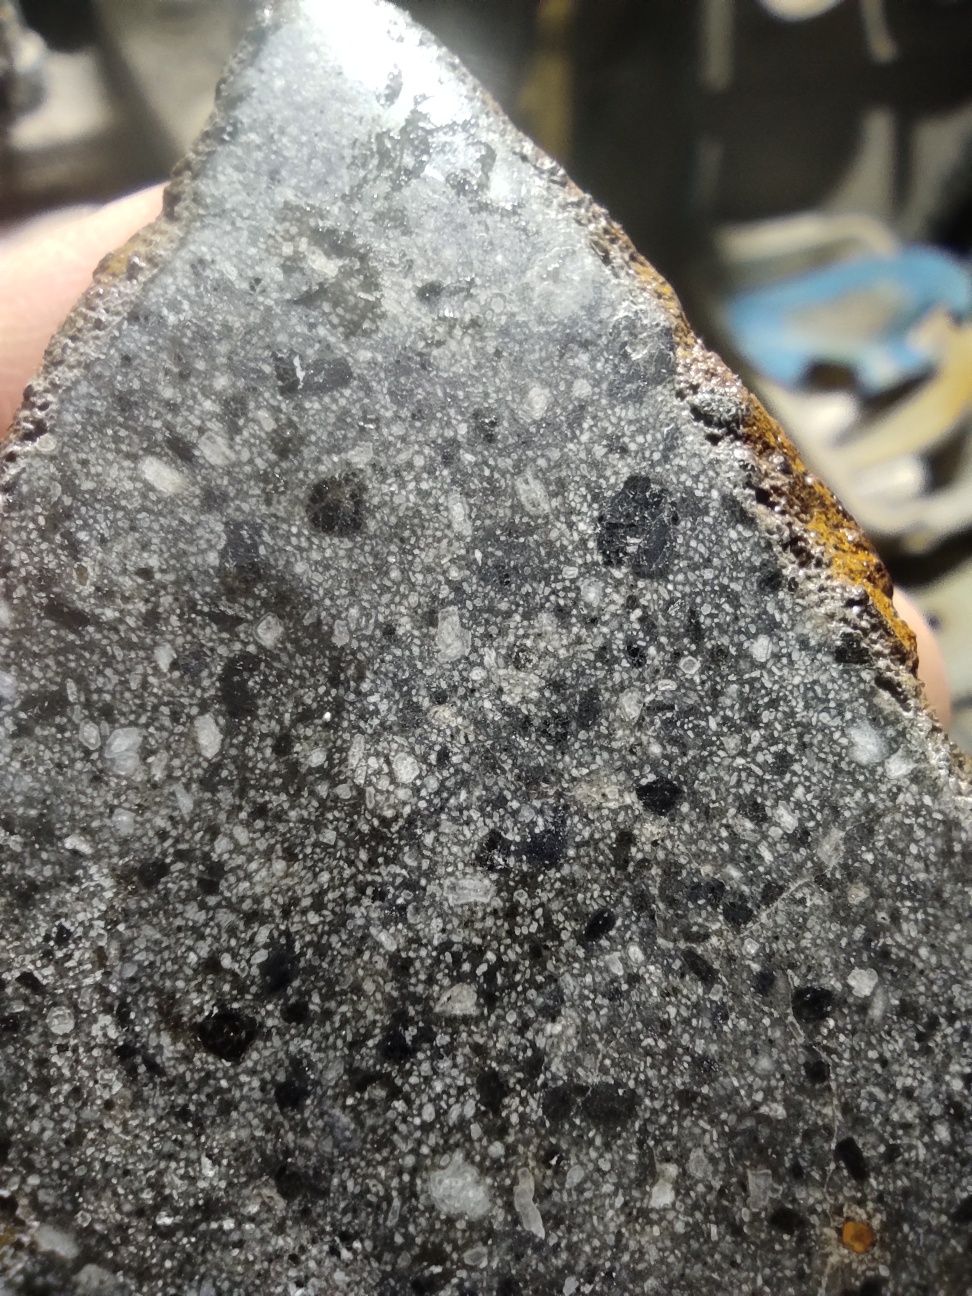 Пластинки метеоритов псевдоморфоз и метаморфозных пород